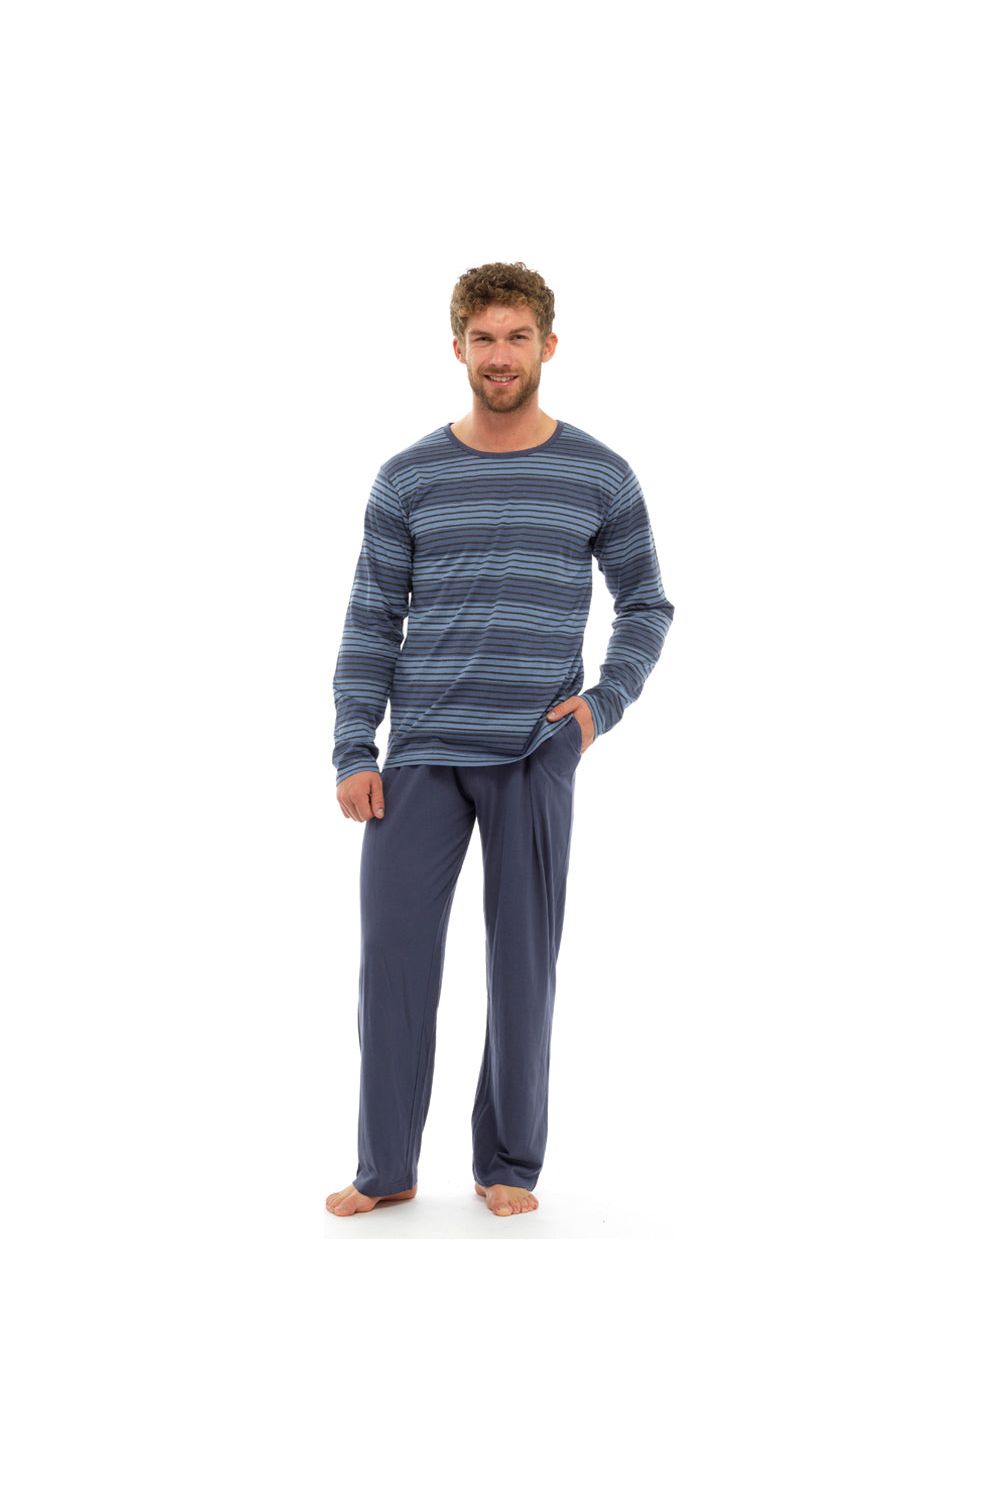 Mens Striped Long Pyjamas - Pyjamas.com